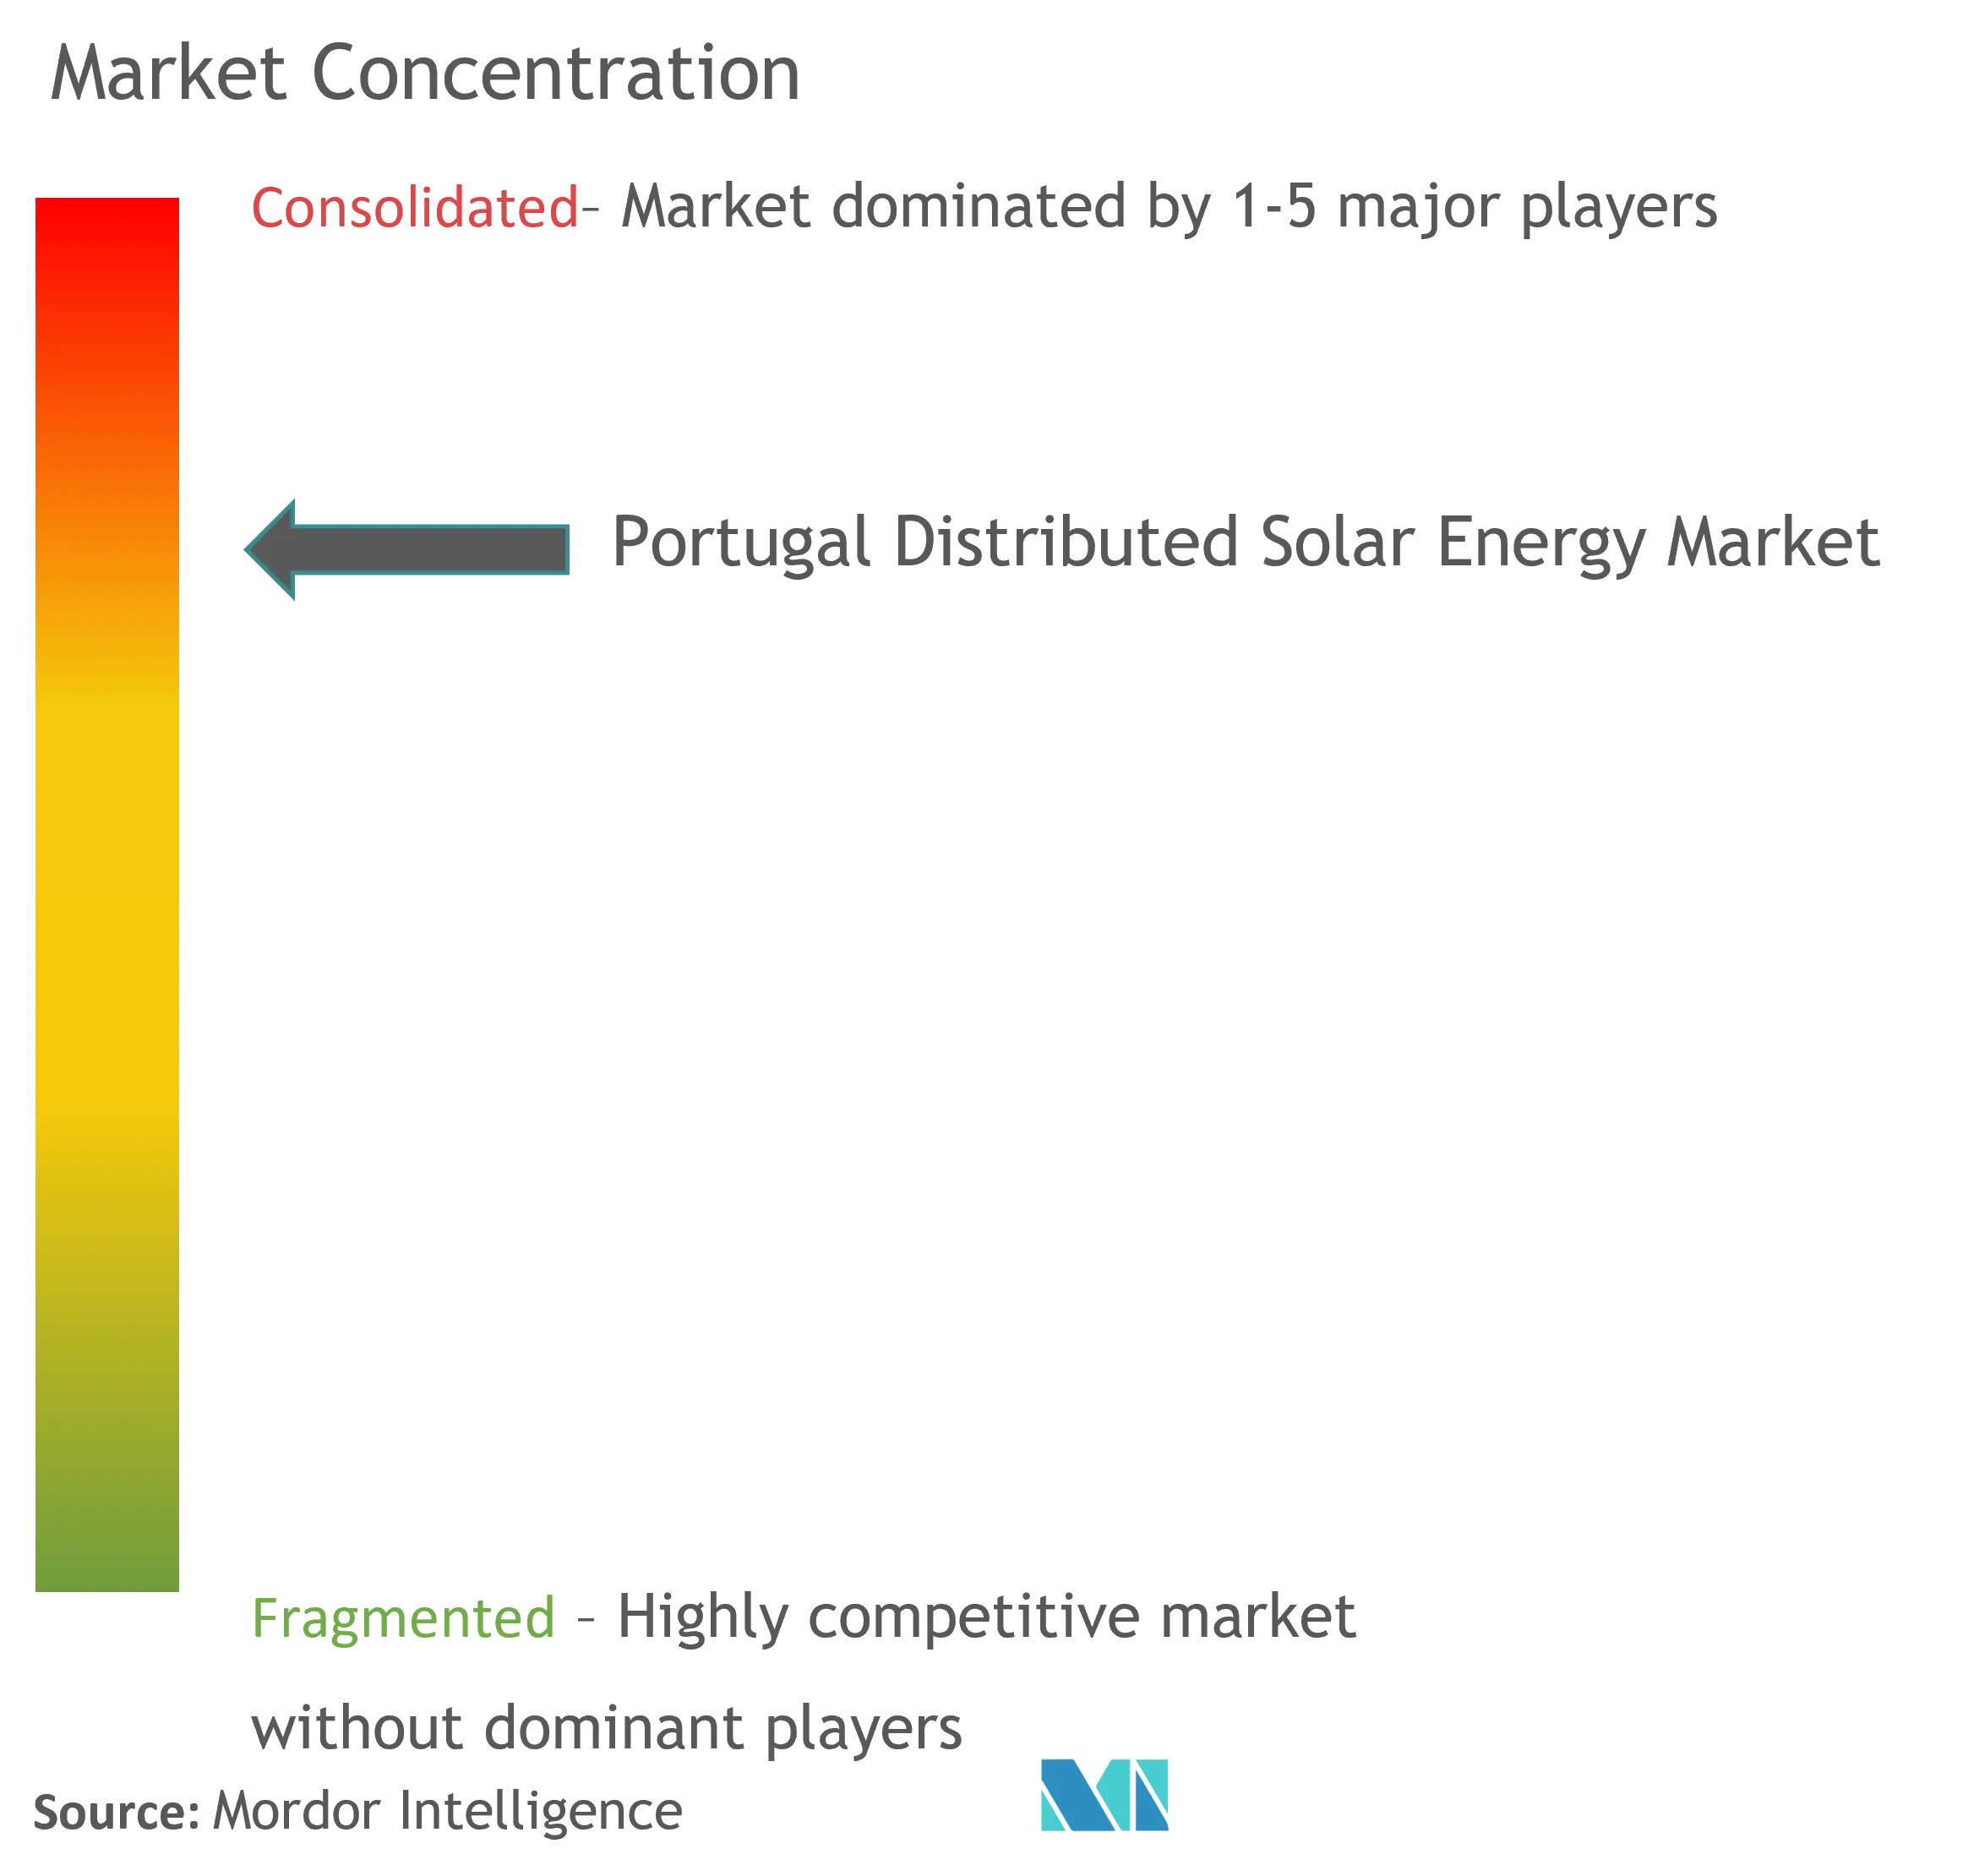 ポルトガルの分散型太陽エネルギー市場集中度